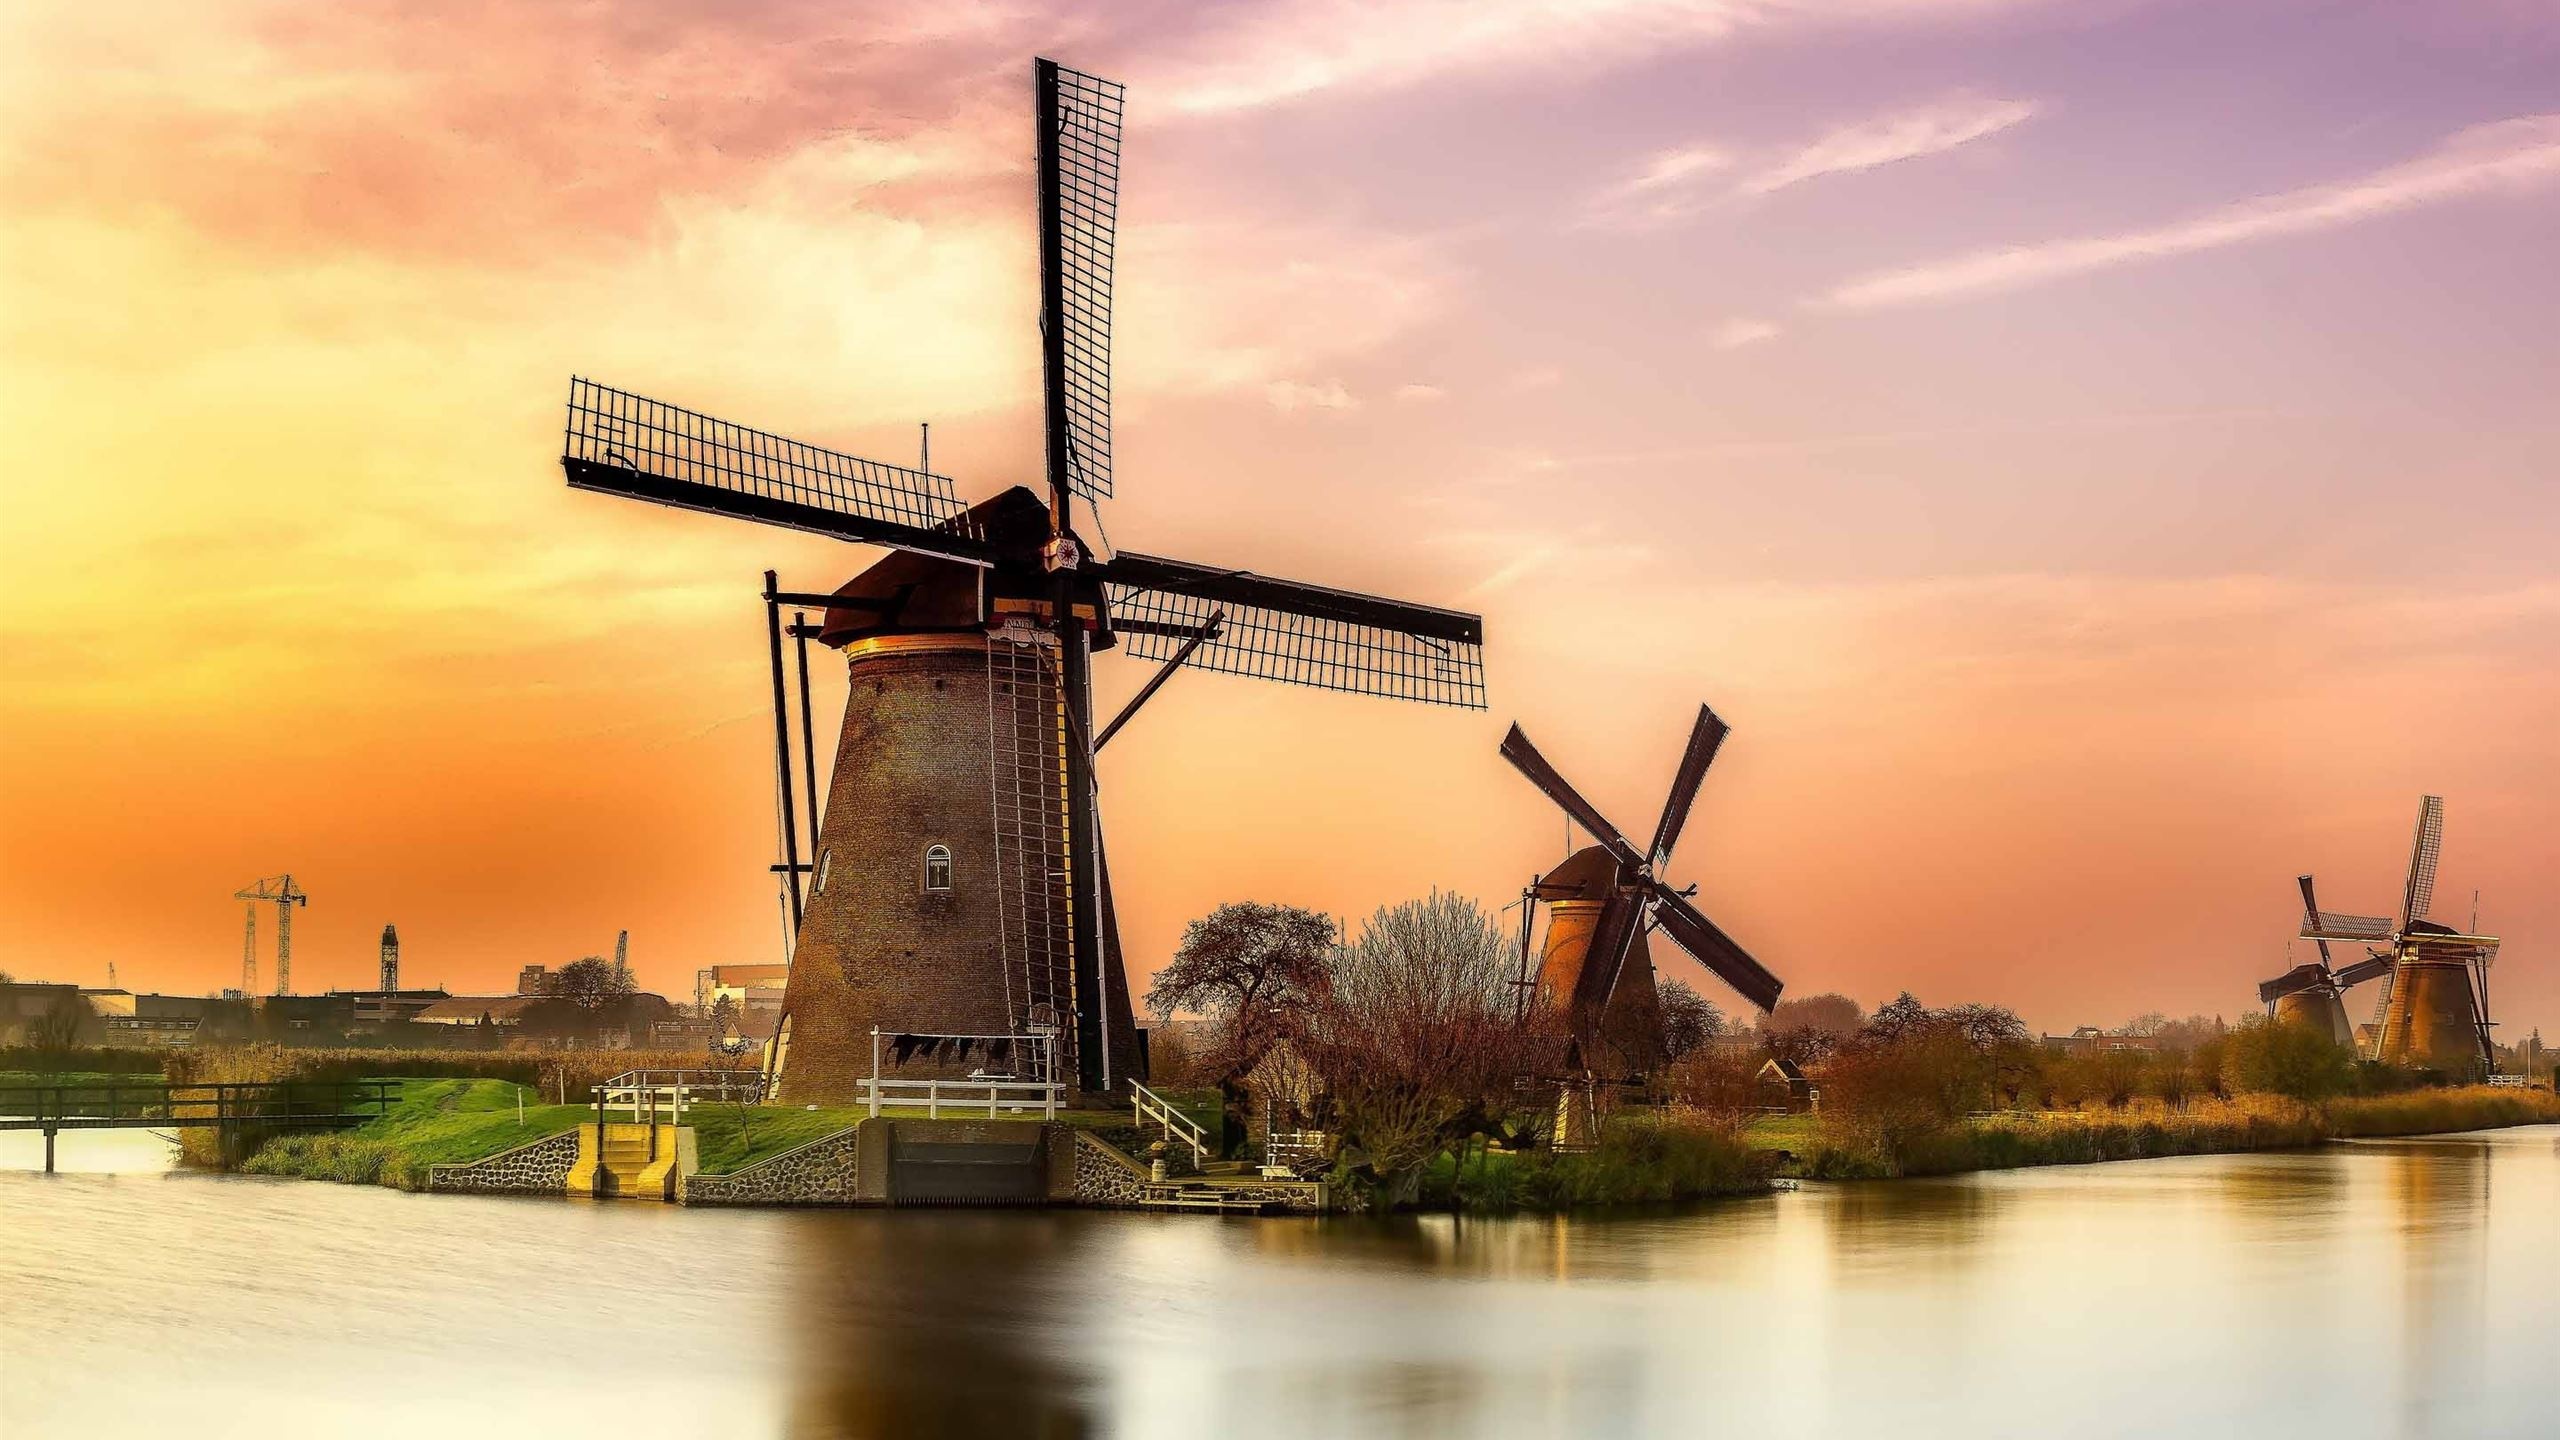 Windmills at Kinderdijk, Holland mill, Sunset mac wallpaper, Free download, 2560x1440 HD Desktop